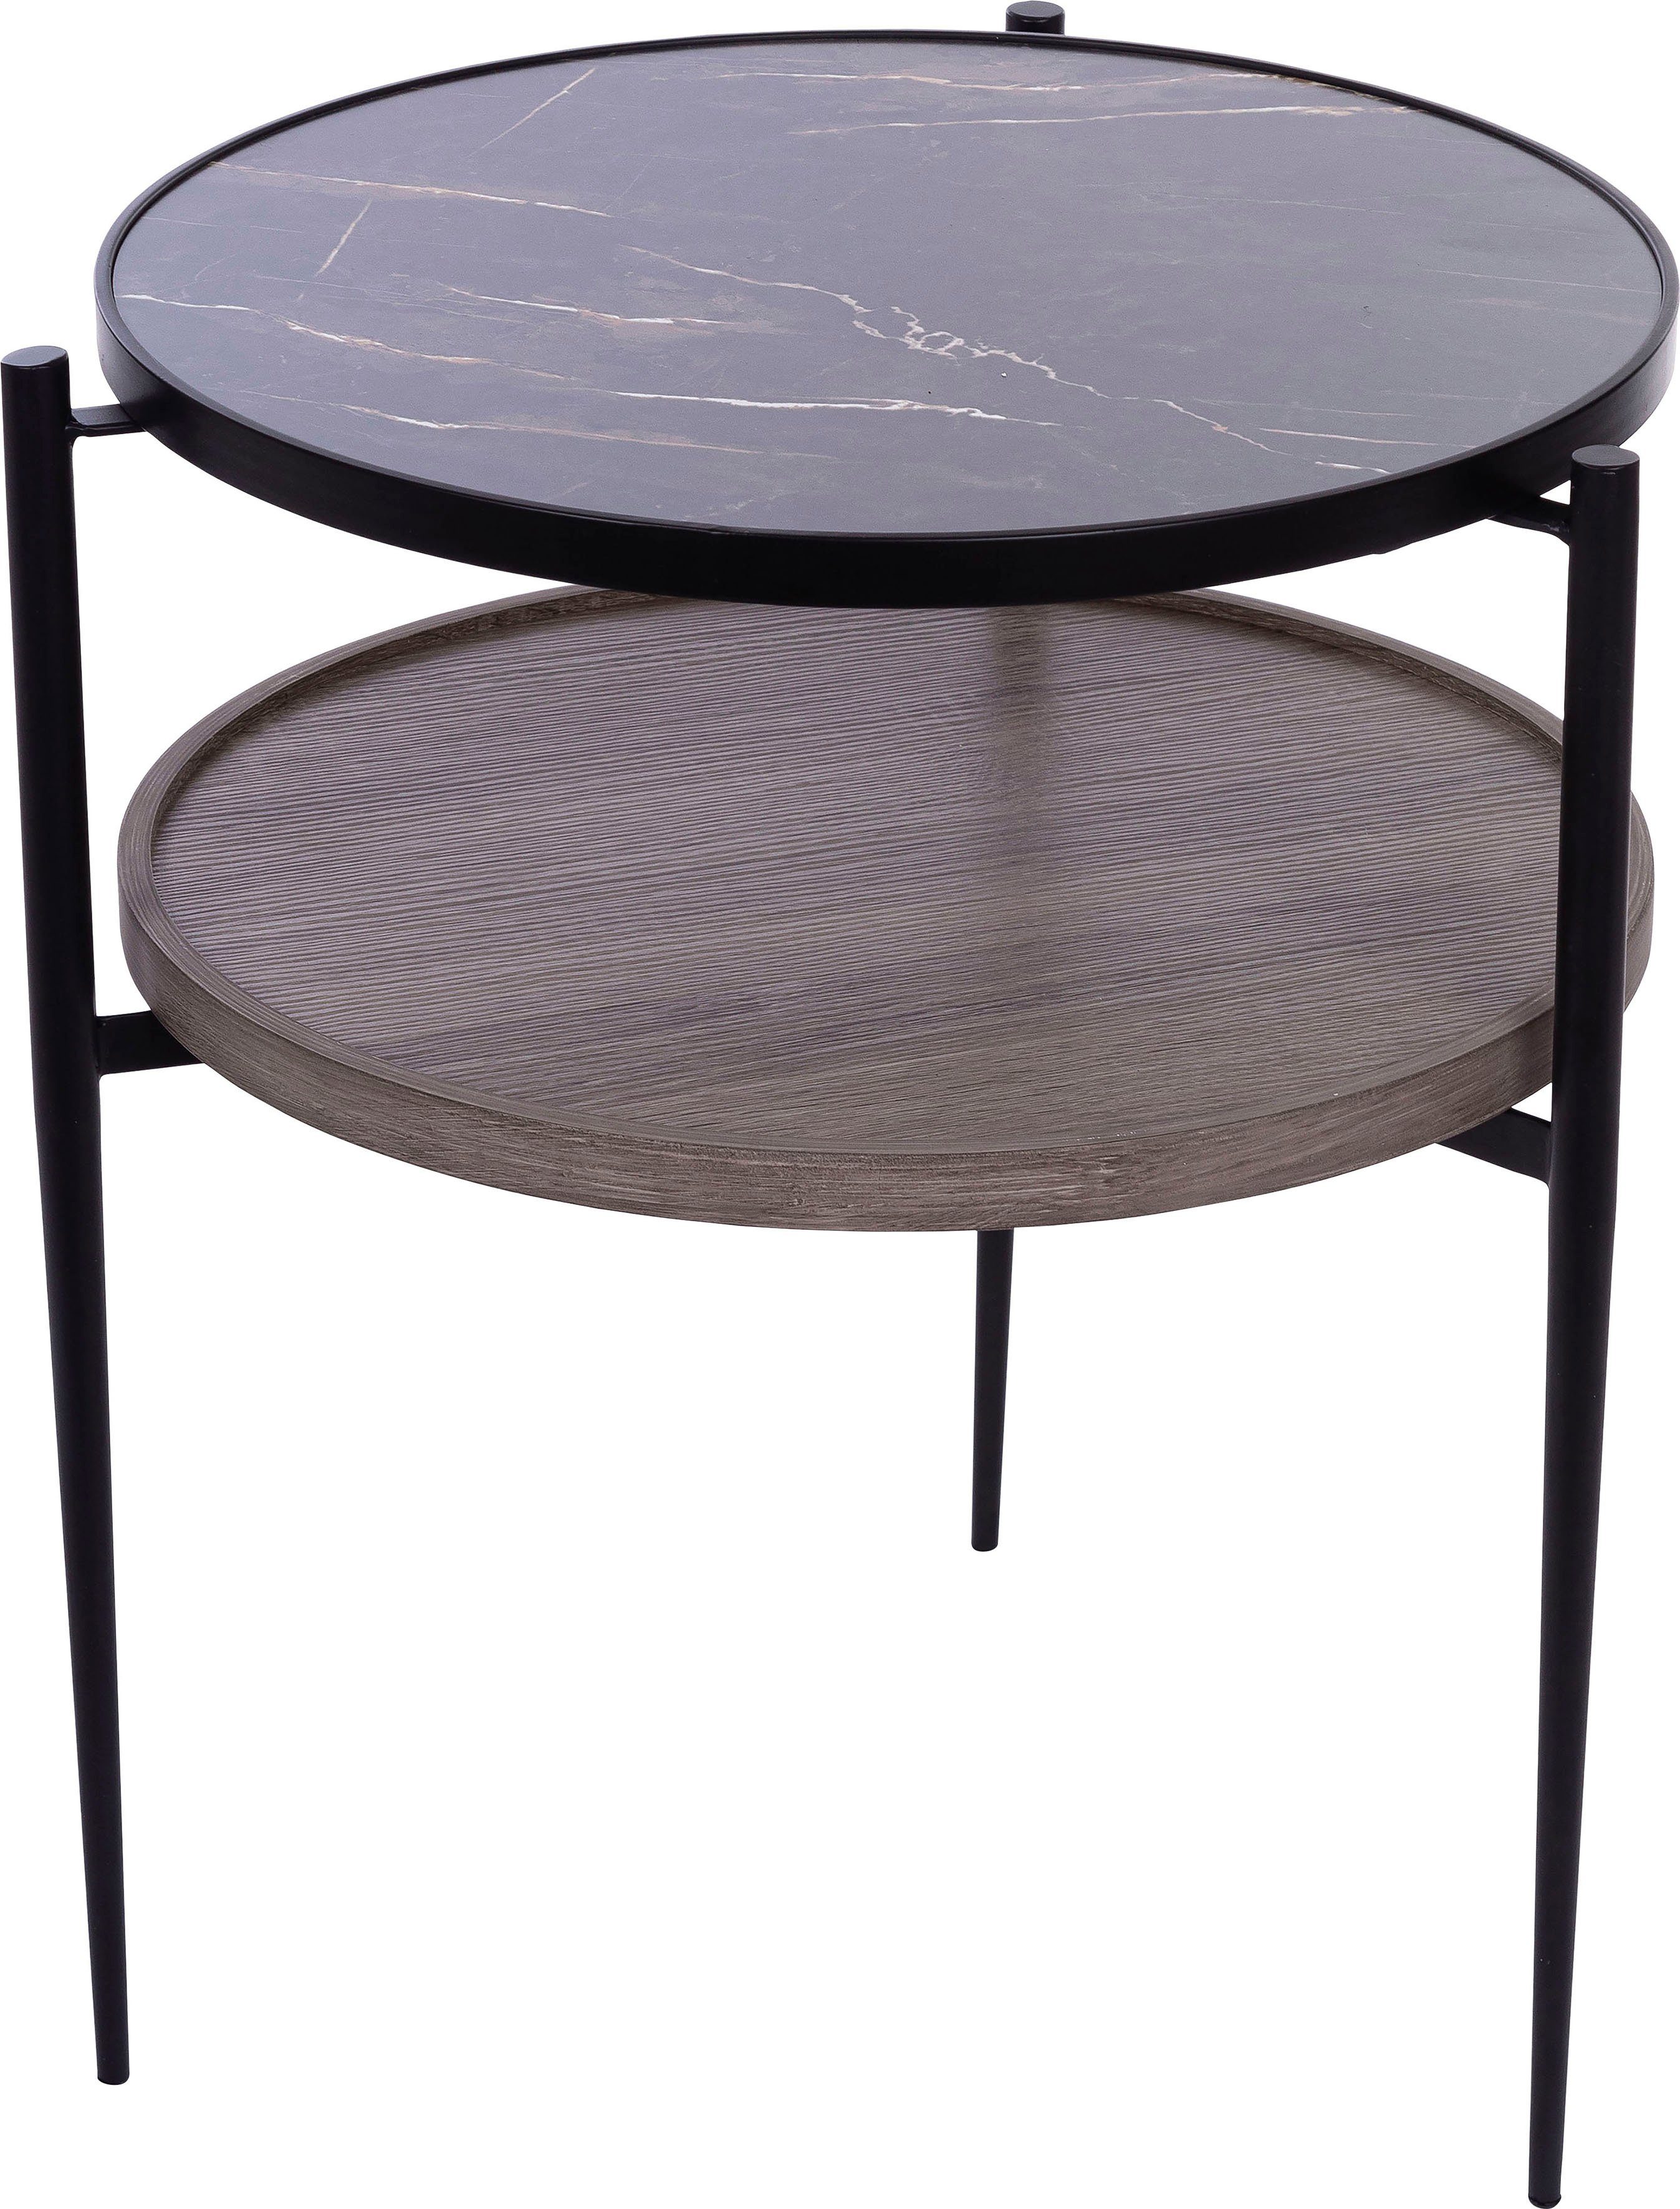 Ablagefach, Holz Beistelltisch natur inkl affaire im Rund, Design Beistelltisch, belassender Tischplatte Tischplatte Home edlem